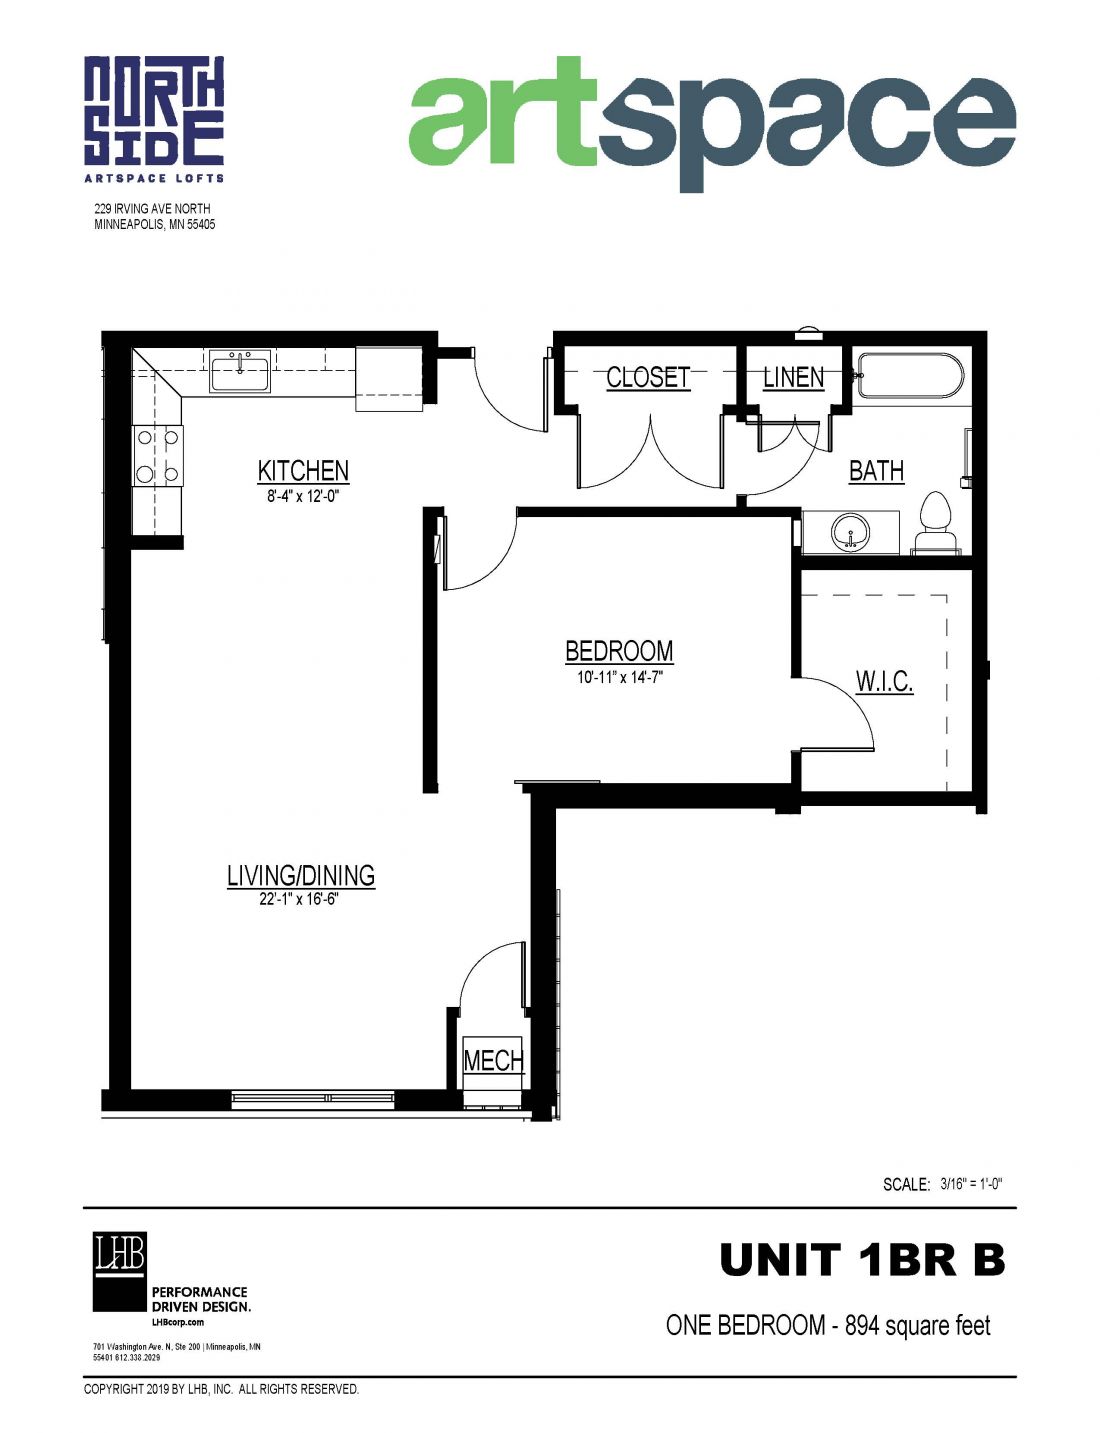 1 Bedroom Floor Plan for Unit 1BR B.